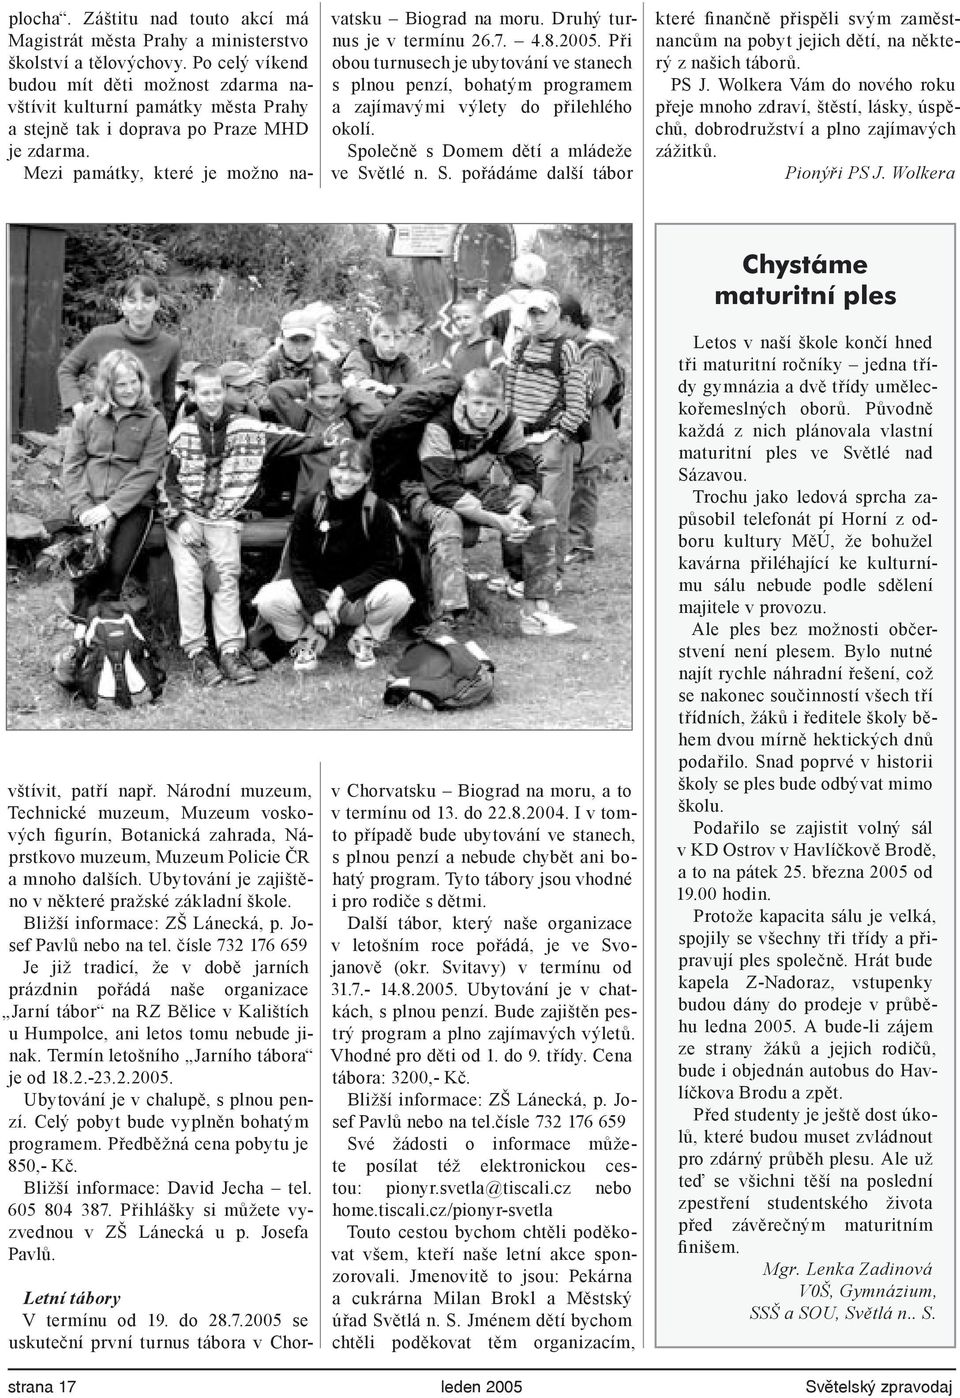 2005 se uskuteční první turnus tábora v Chorkteré finančně přispěli svým zaměstnancům na pobyt jejich dětí, na některý z našich táborů. PS J.